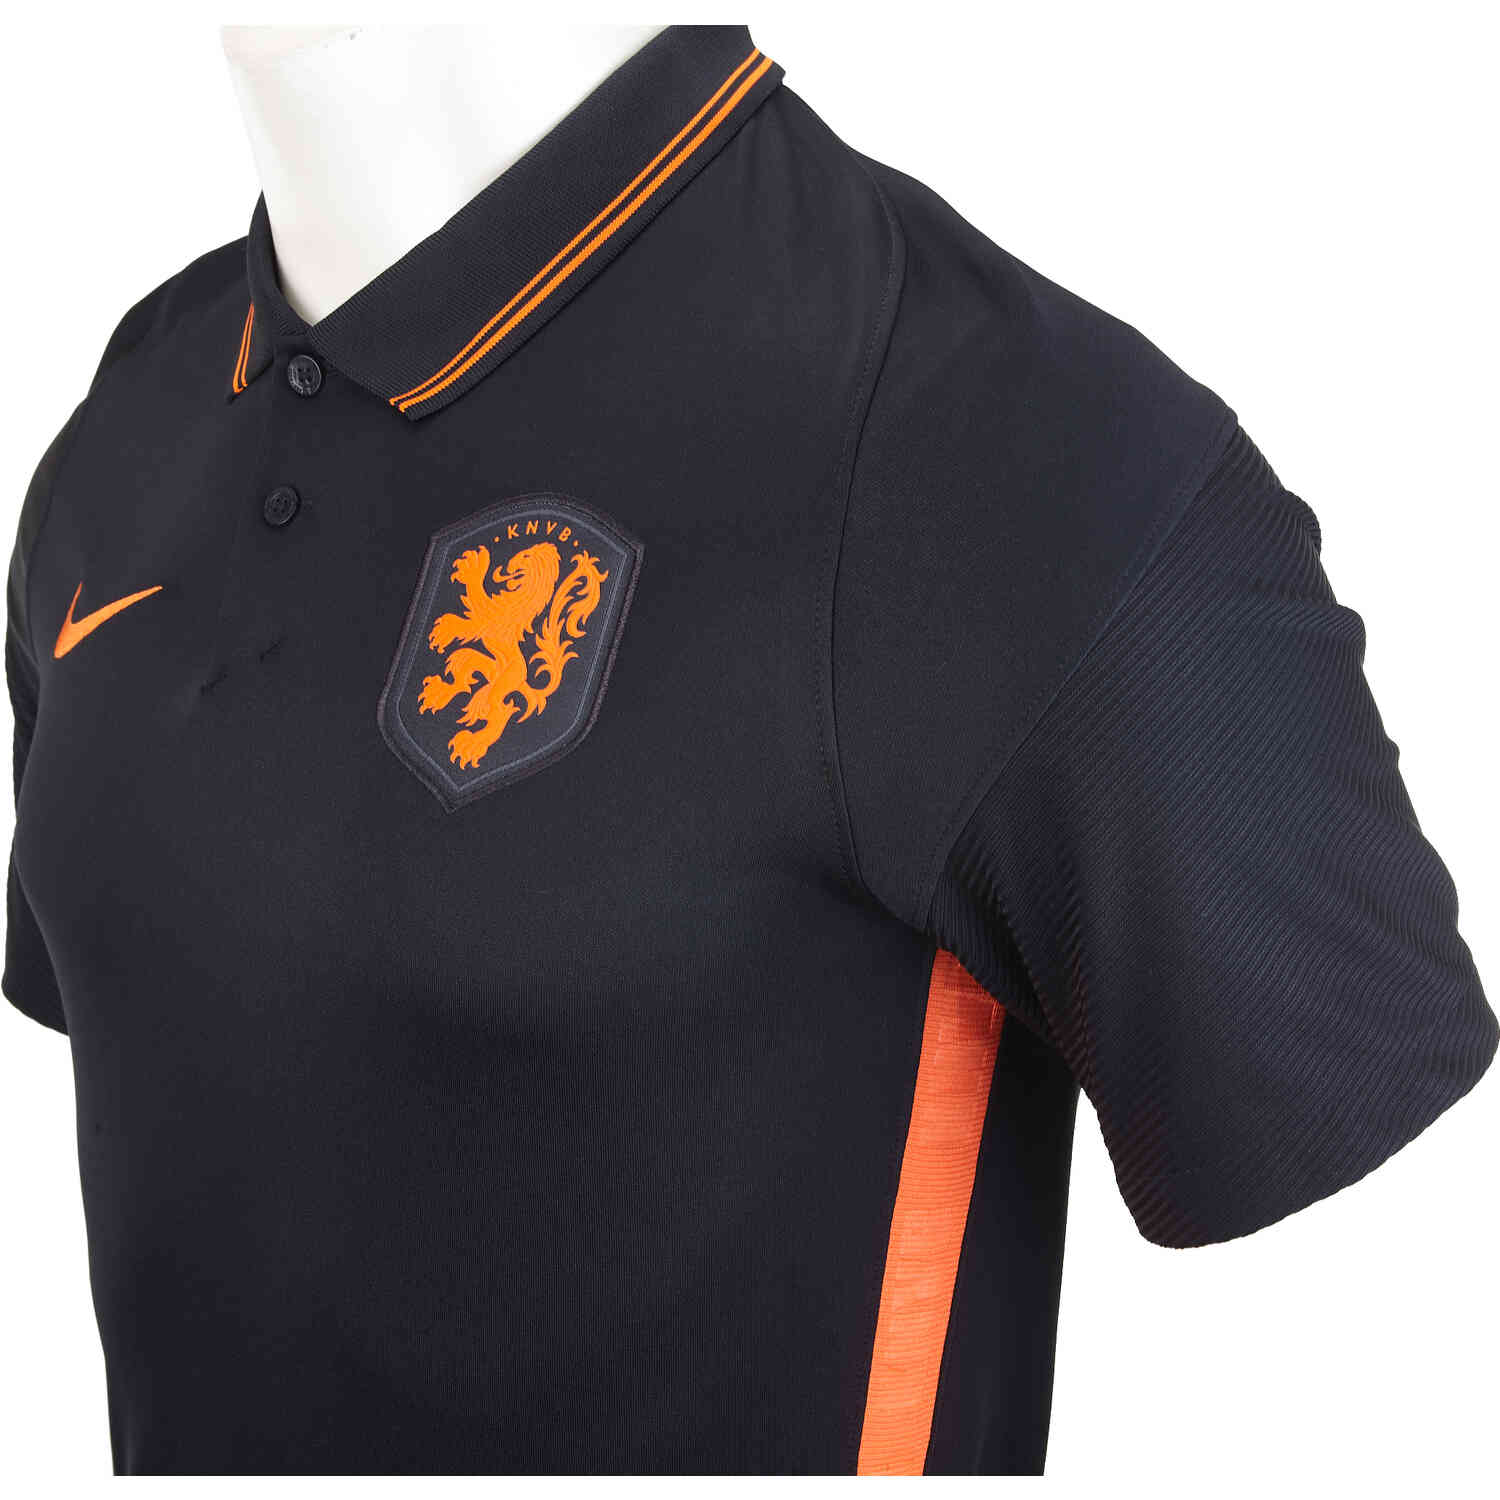 memphis depay netherlands jersey